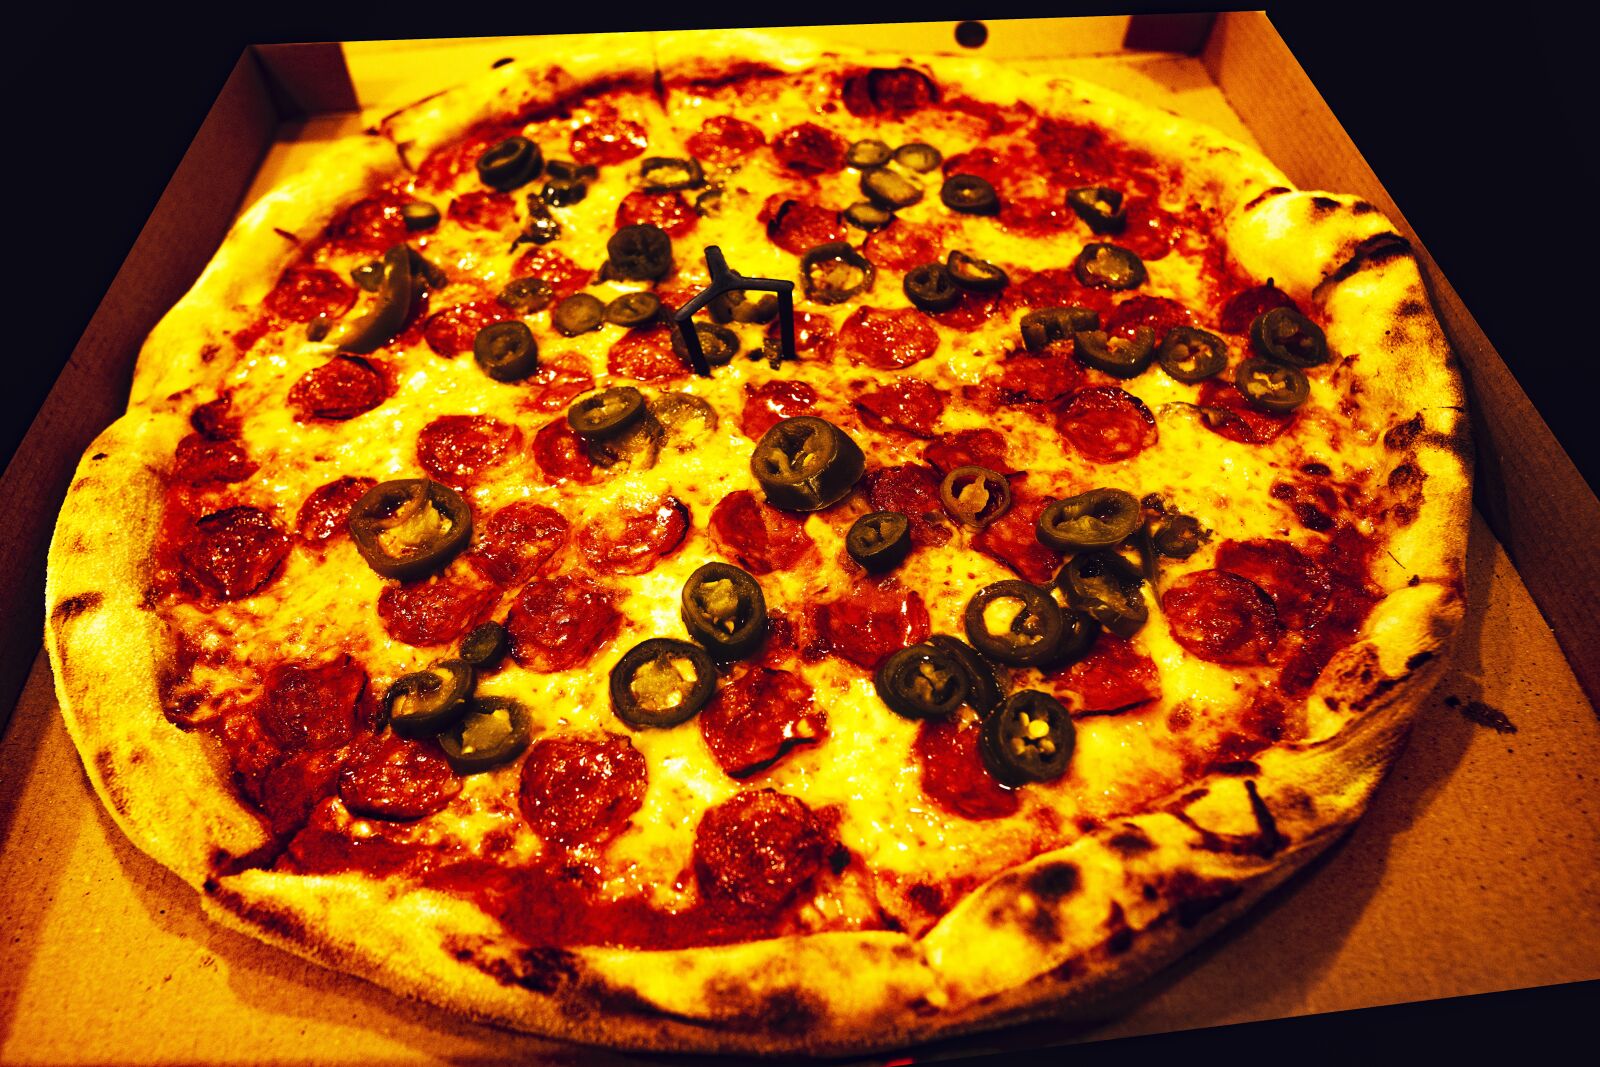 Sony a6400 sample photo. "Pizza, food, italian" photography